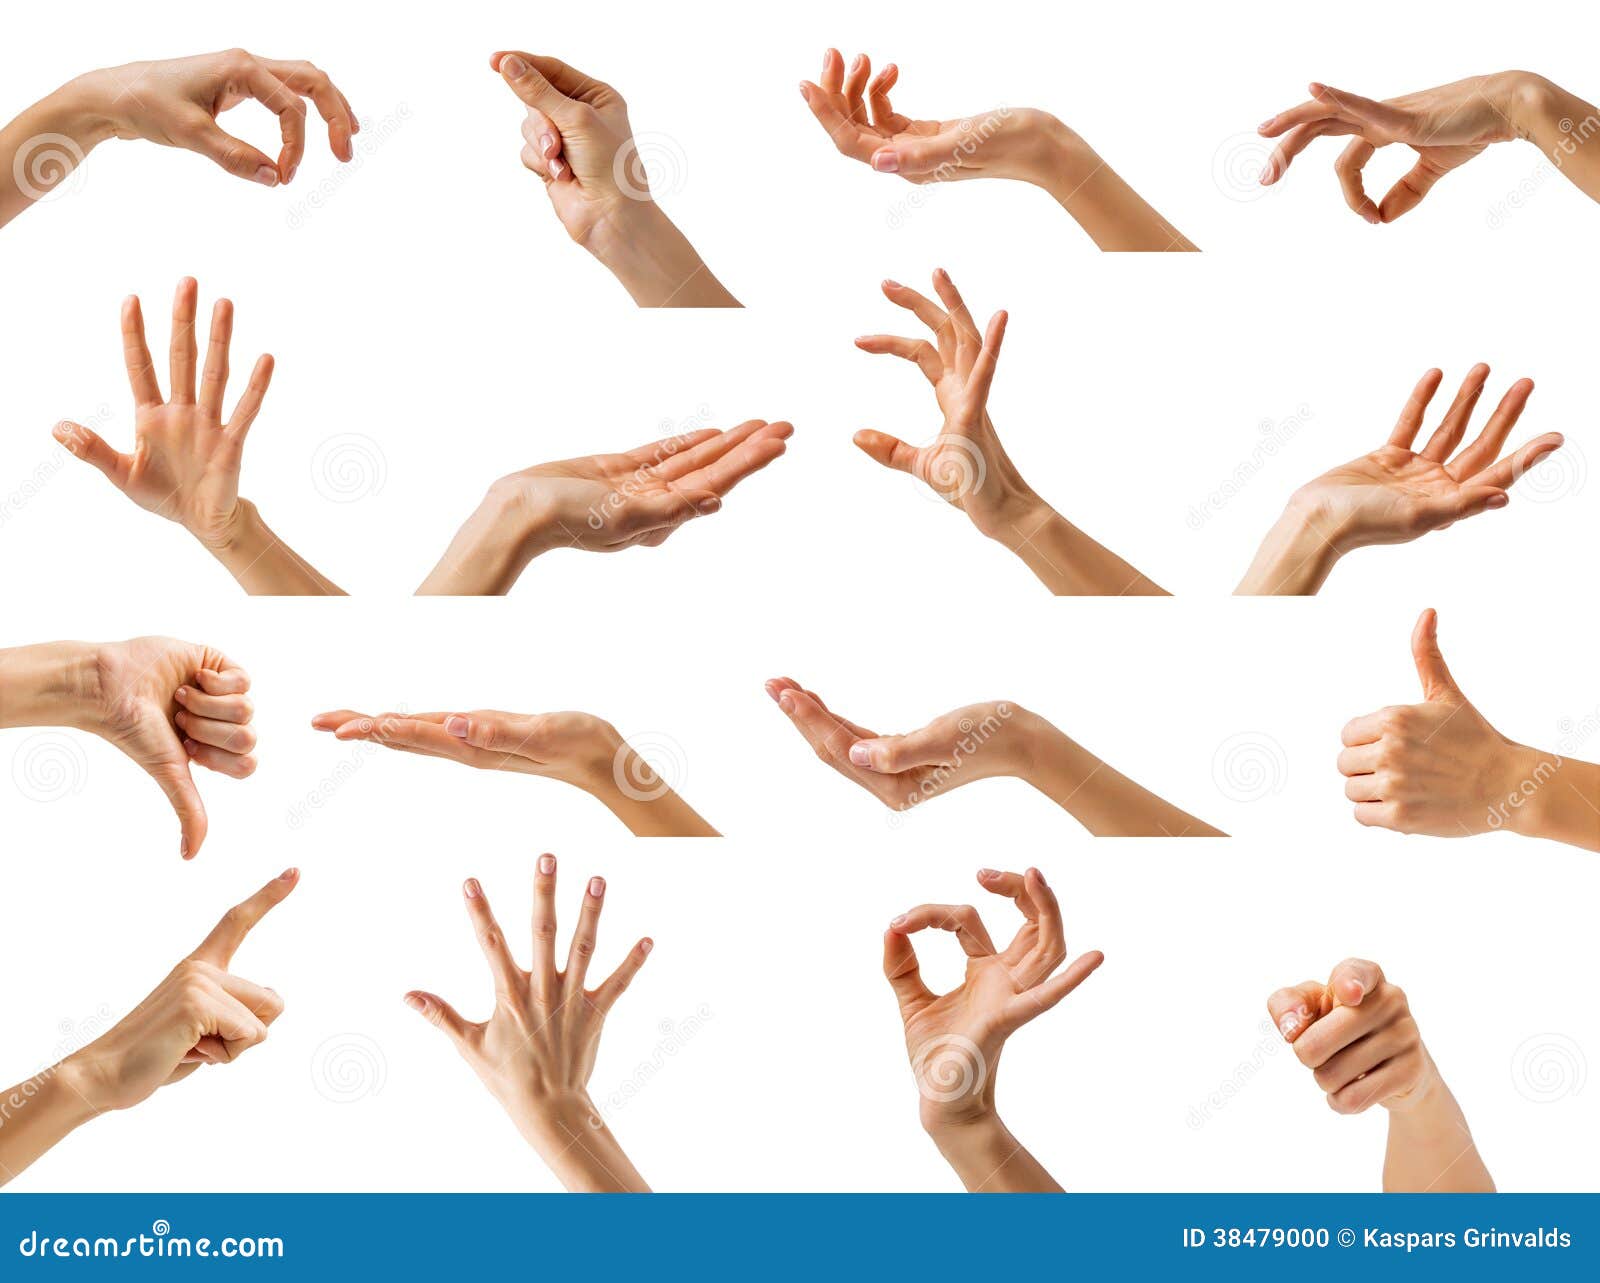 Руки collection. Красивые жесты руками. Жесты кистей рук. Женские руки жесты. Женская кисть руки.